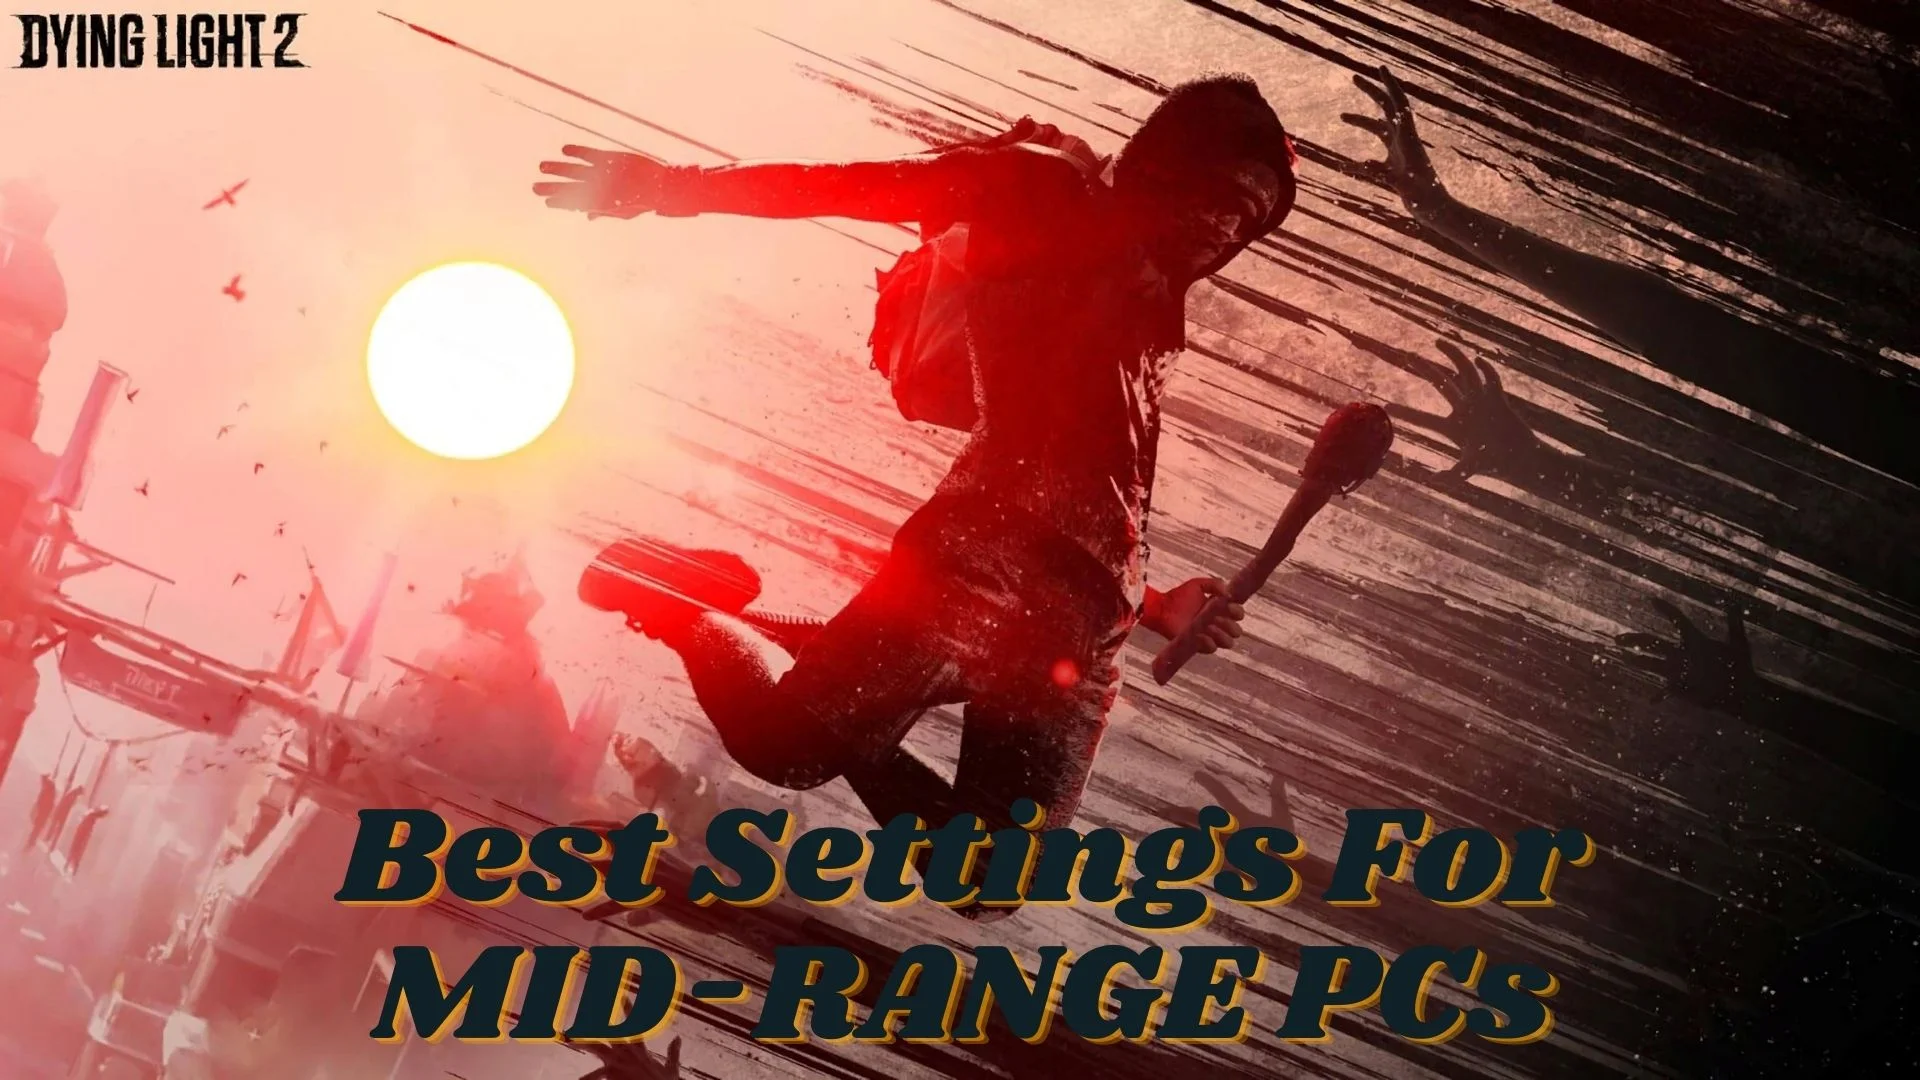 Best Dying Light 2 Settings for Mid Range PC